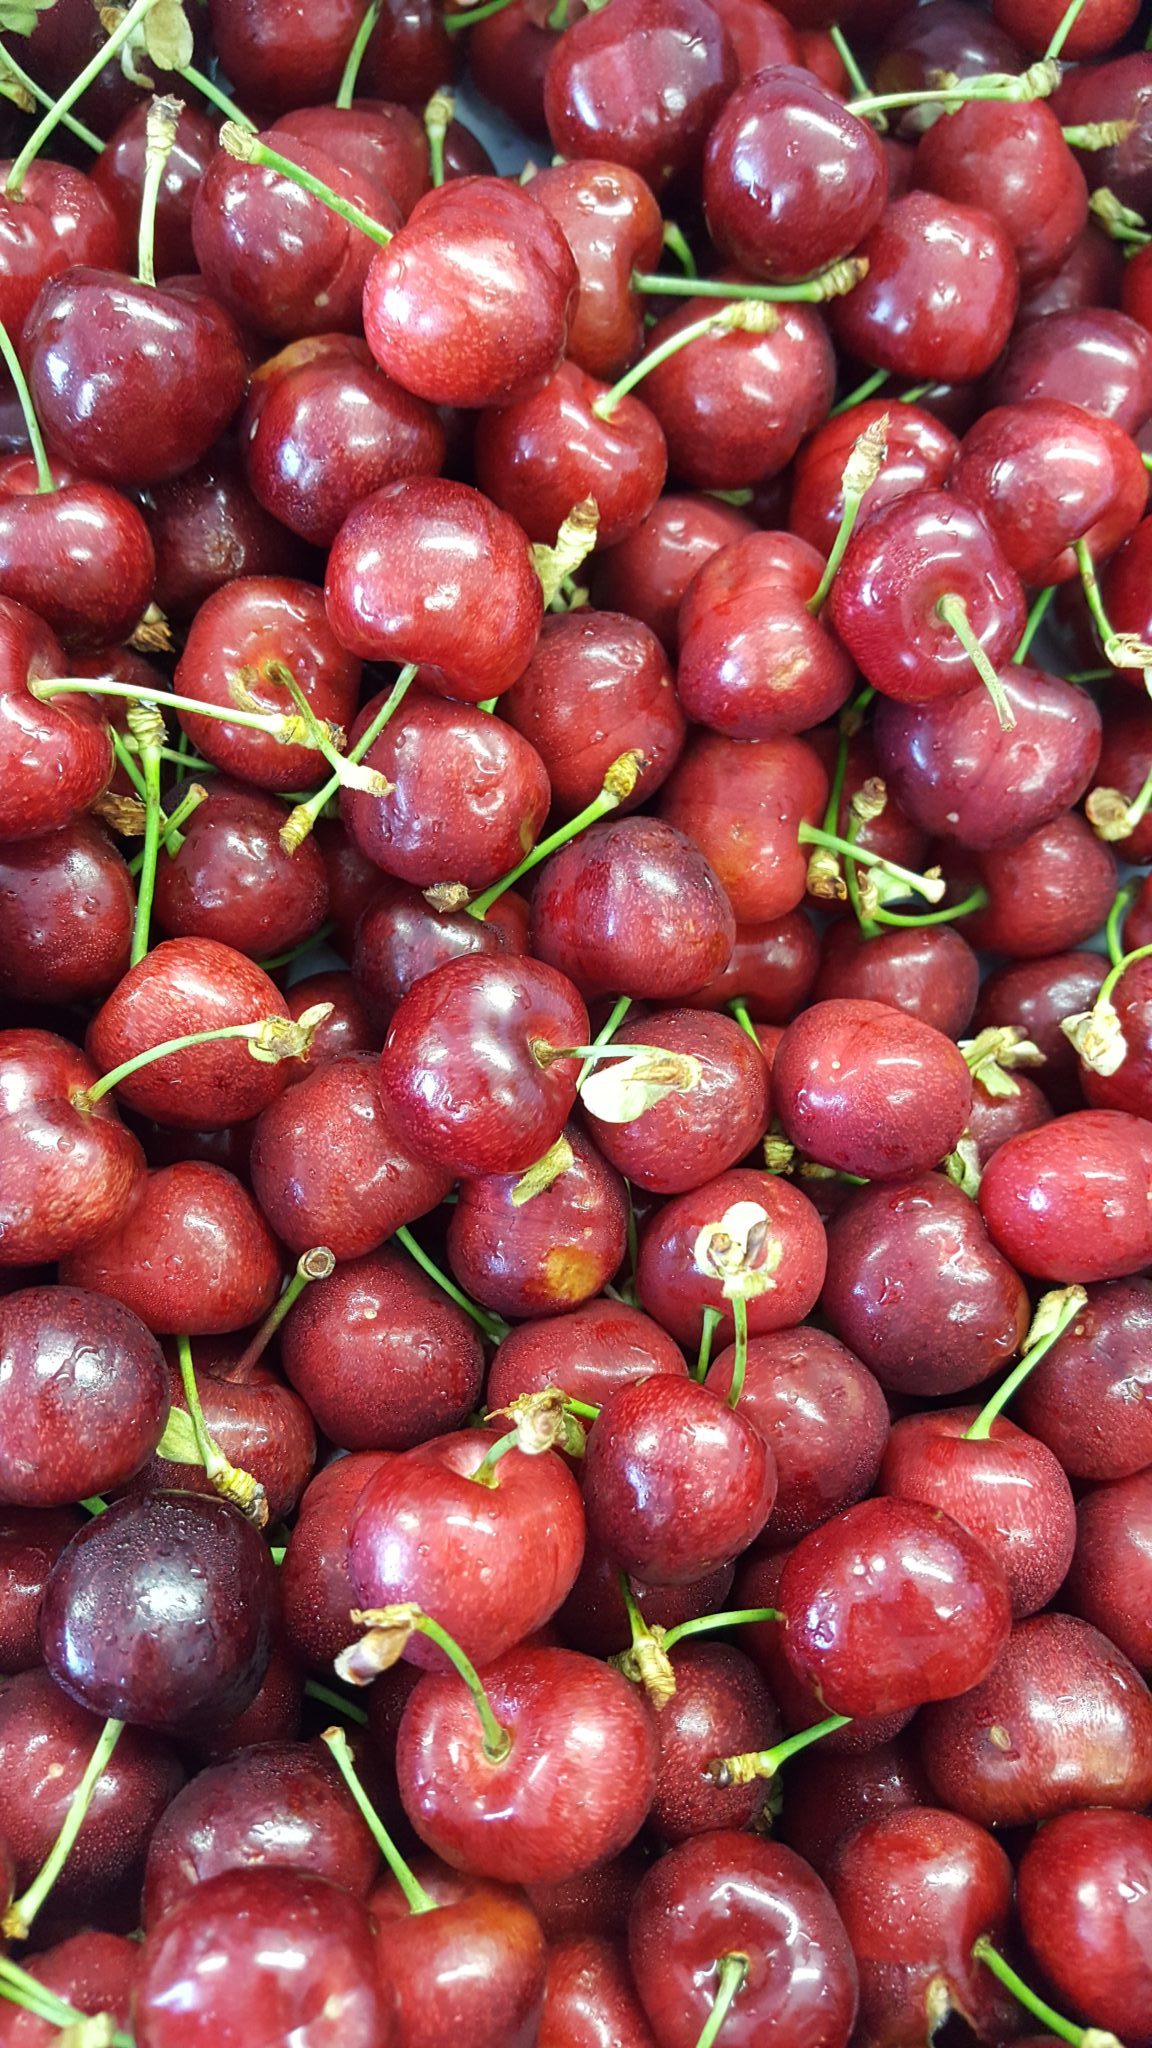 Cerises de Céret : de superbes fruits à consommer tout l'été !